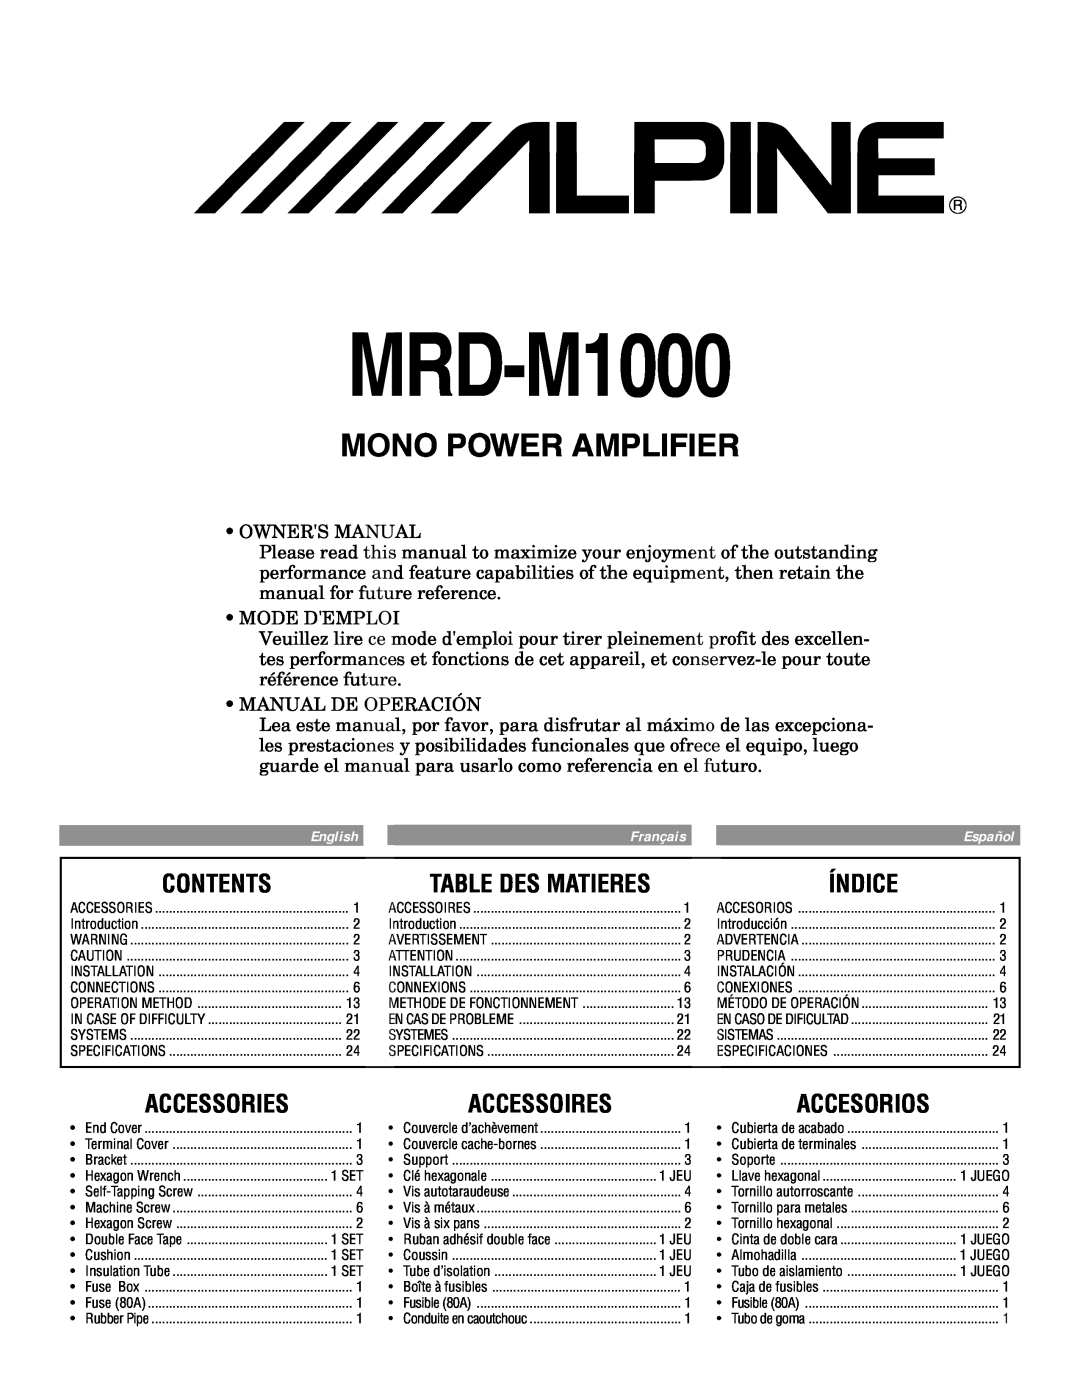 Alpine MRD-M1000 owner manual Contents, Índice, Accessories, Accessoires, Accesorios, Mono Power Amplifier 